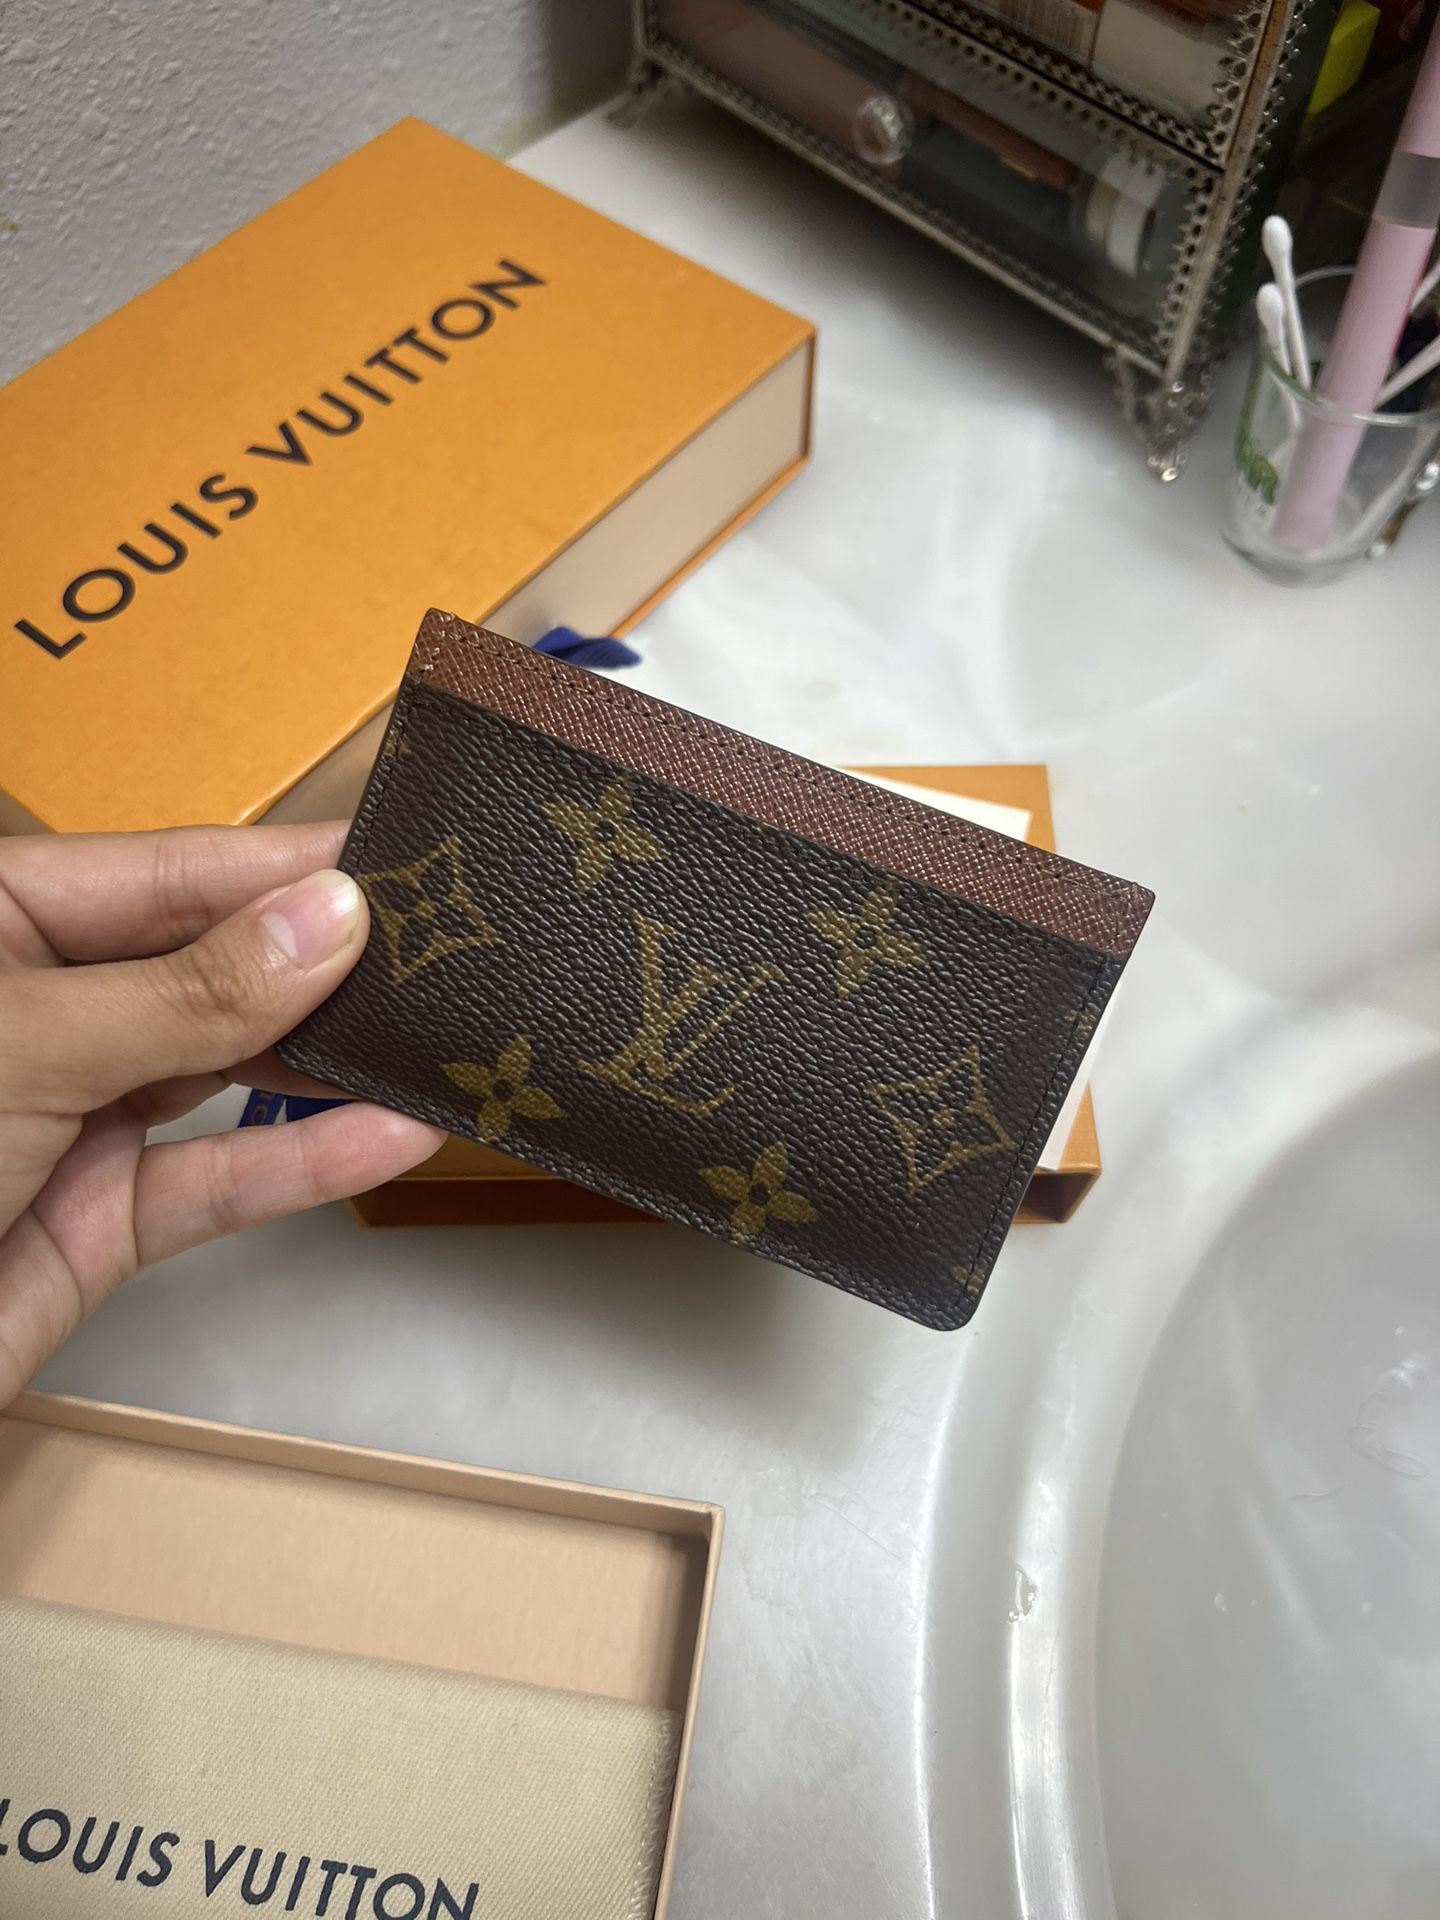 Louis Vuitton Cardholder 